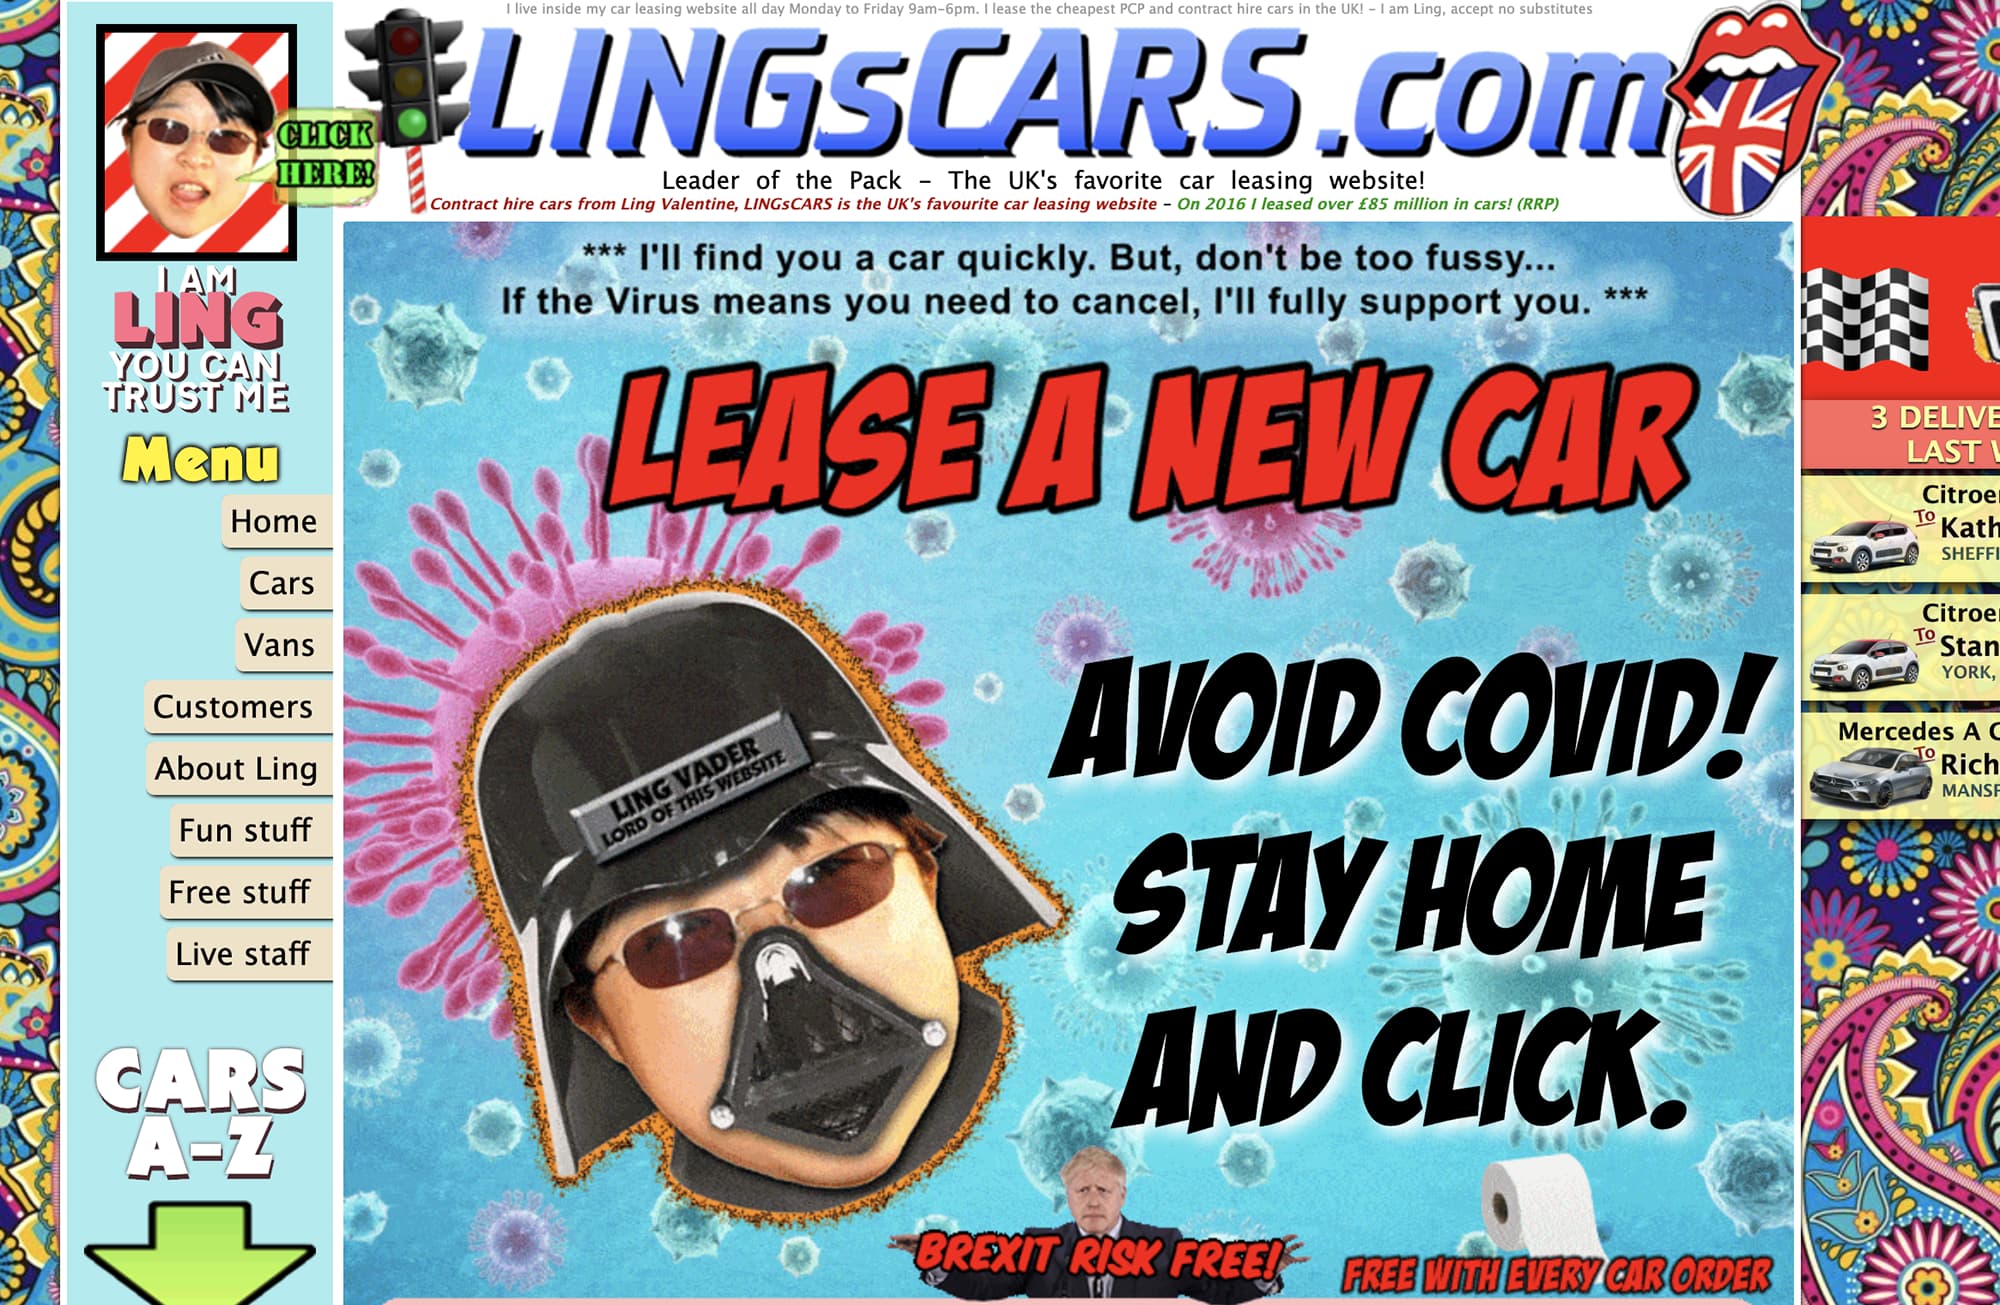 Lings cars website